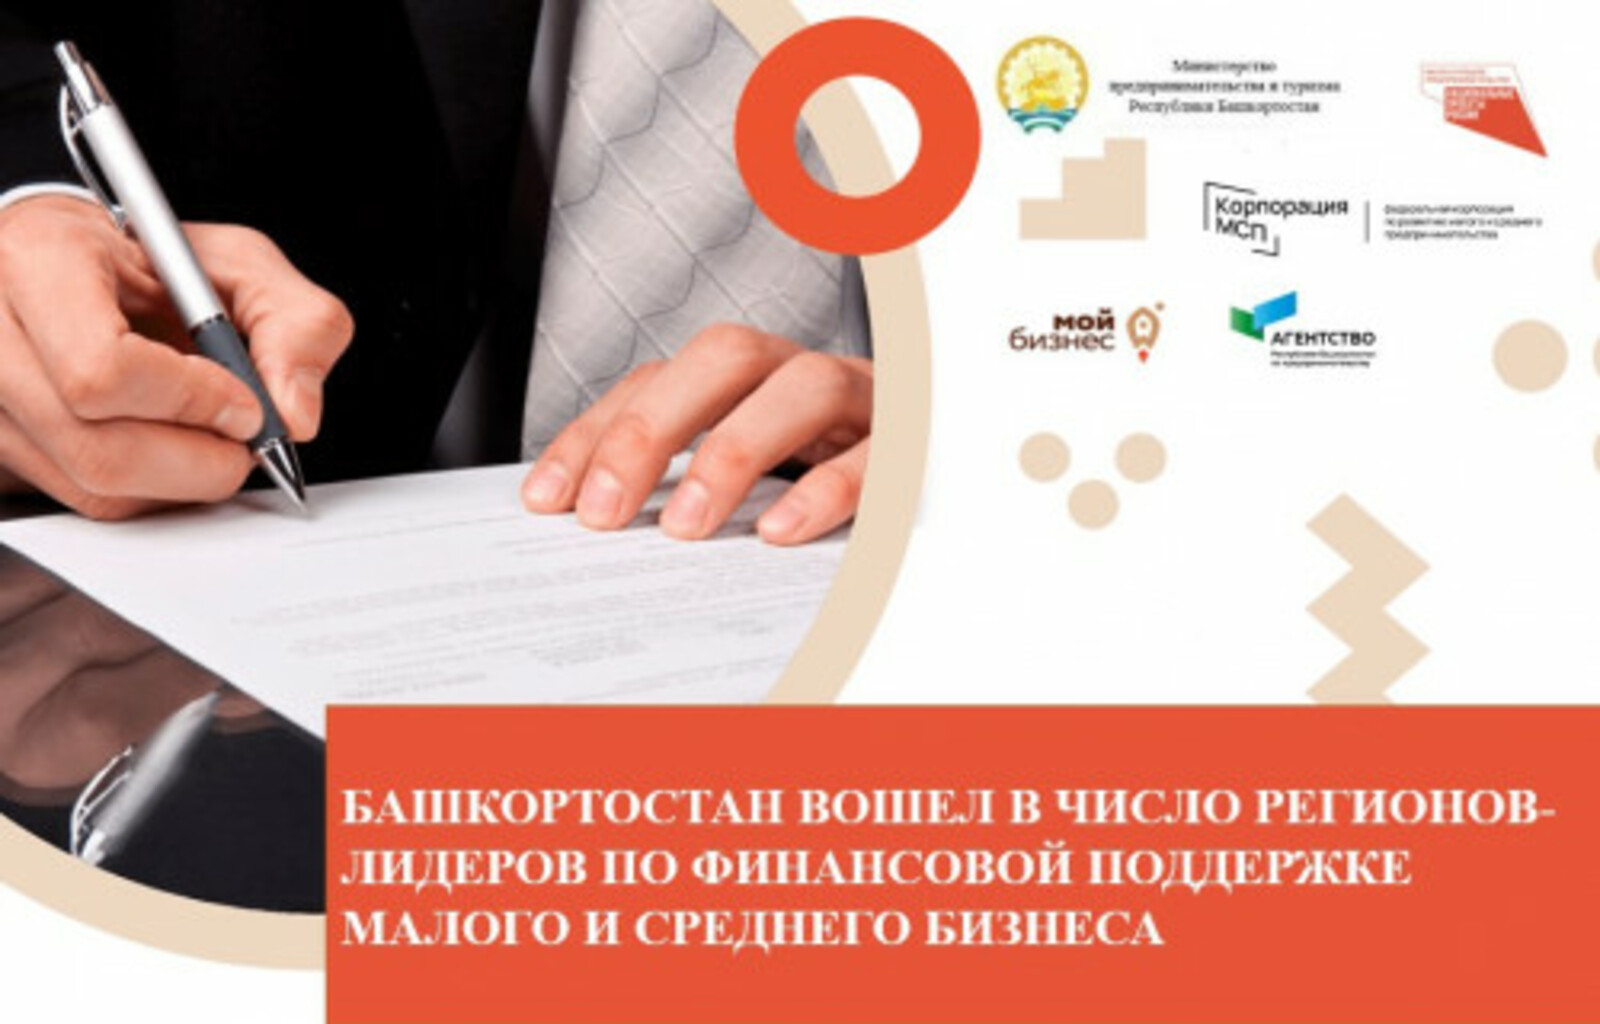 Башкортостан вошёл в число 10 регионов-лидеров по финансовой поддержке малого и среднего бизнеса